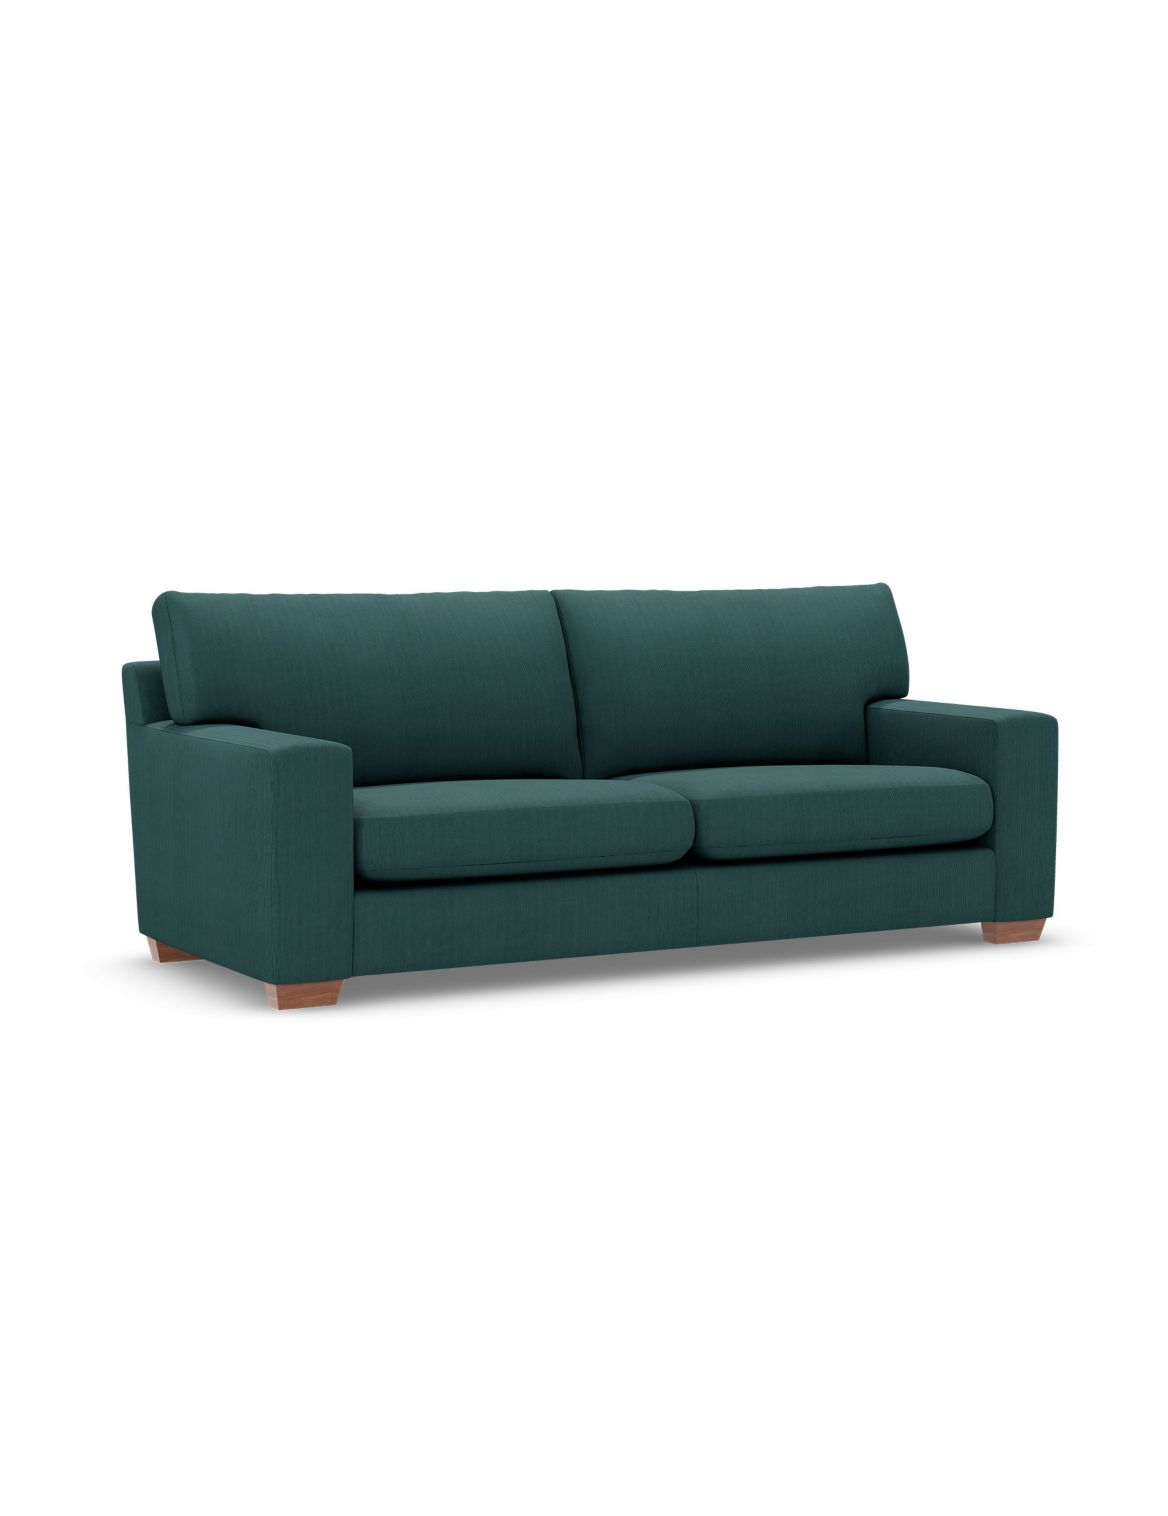 Alfie Large Sofa green